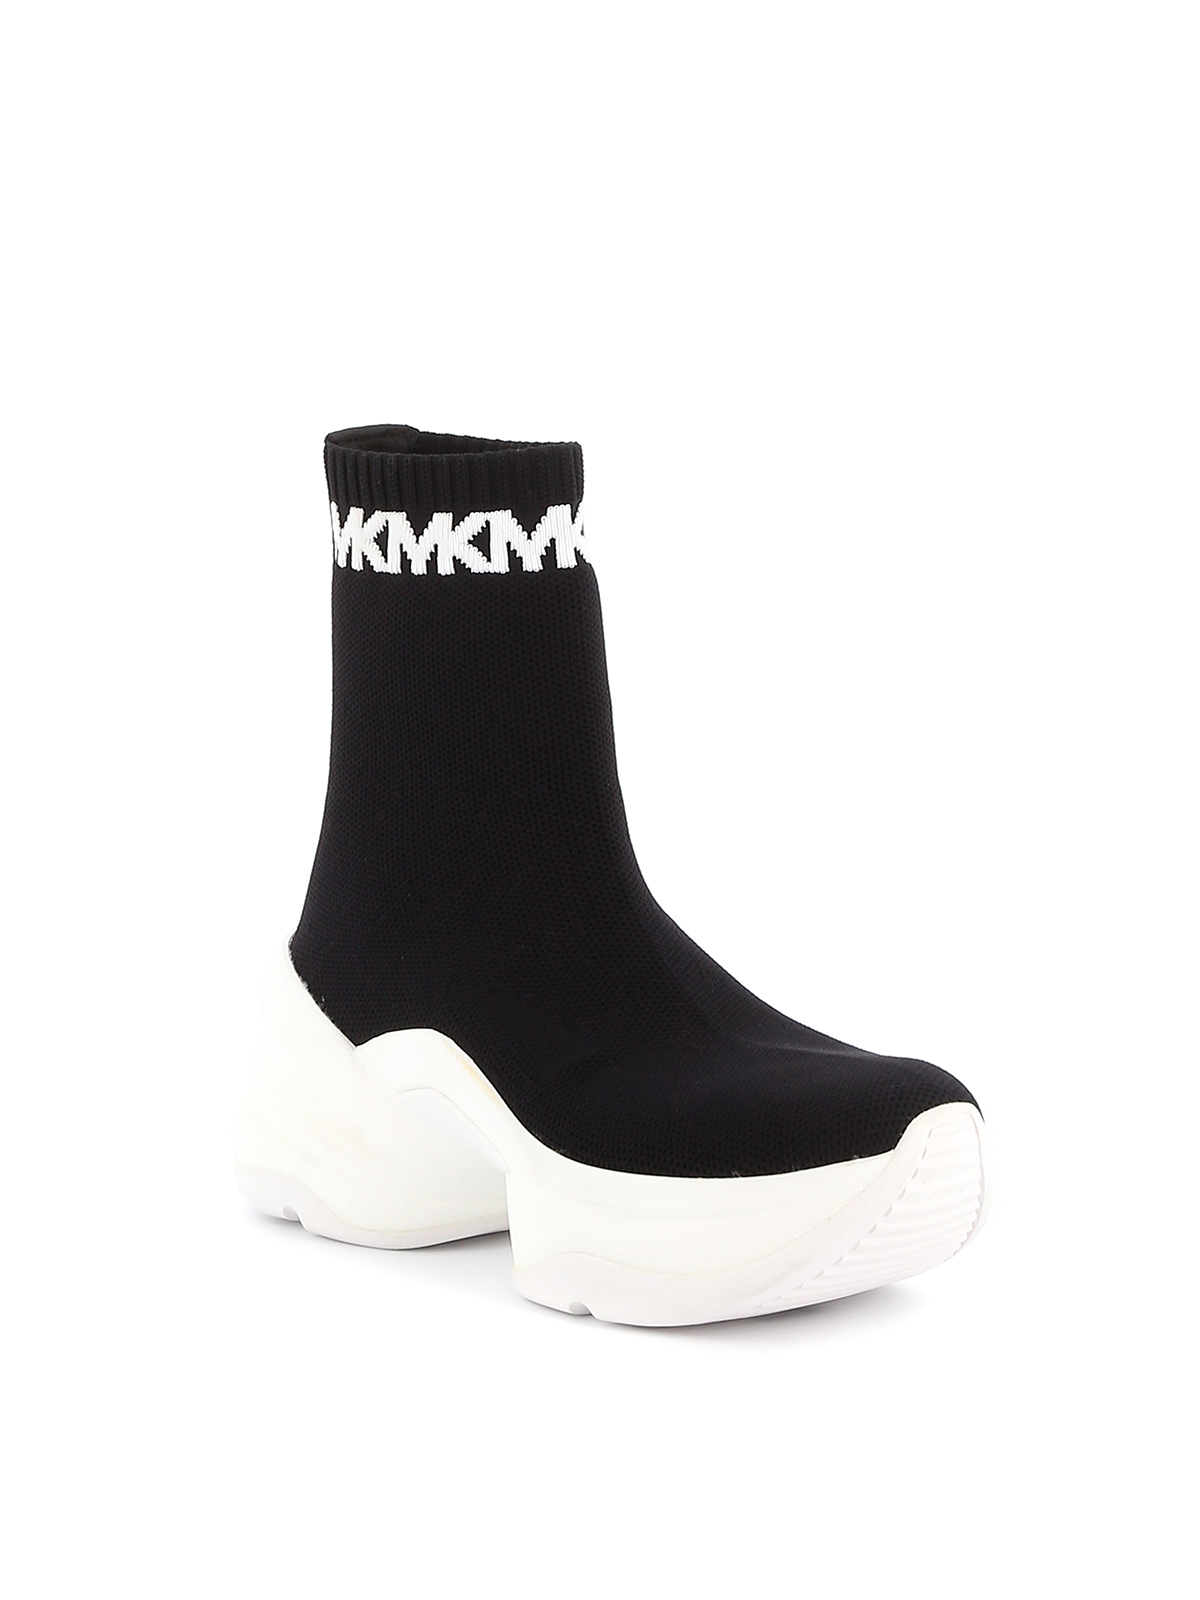 michael kors black sock sneakers